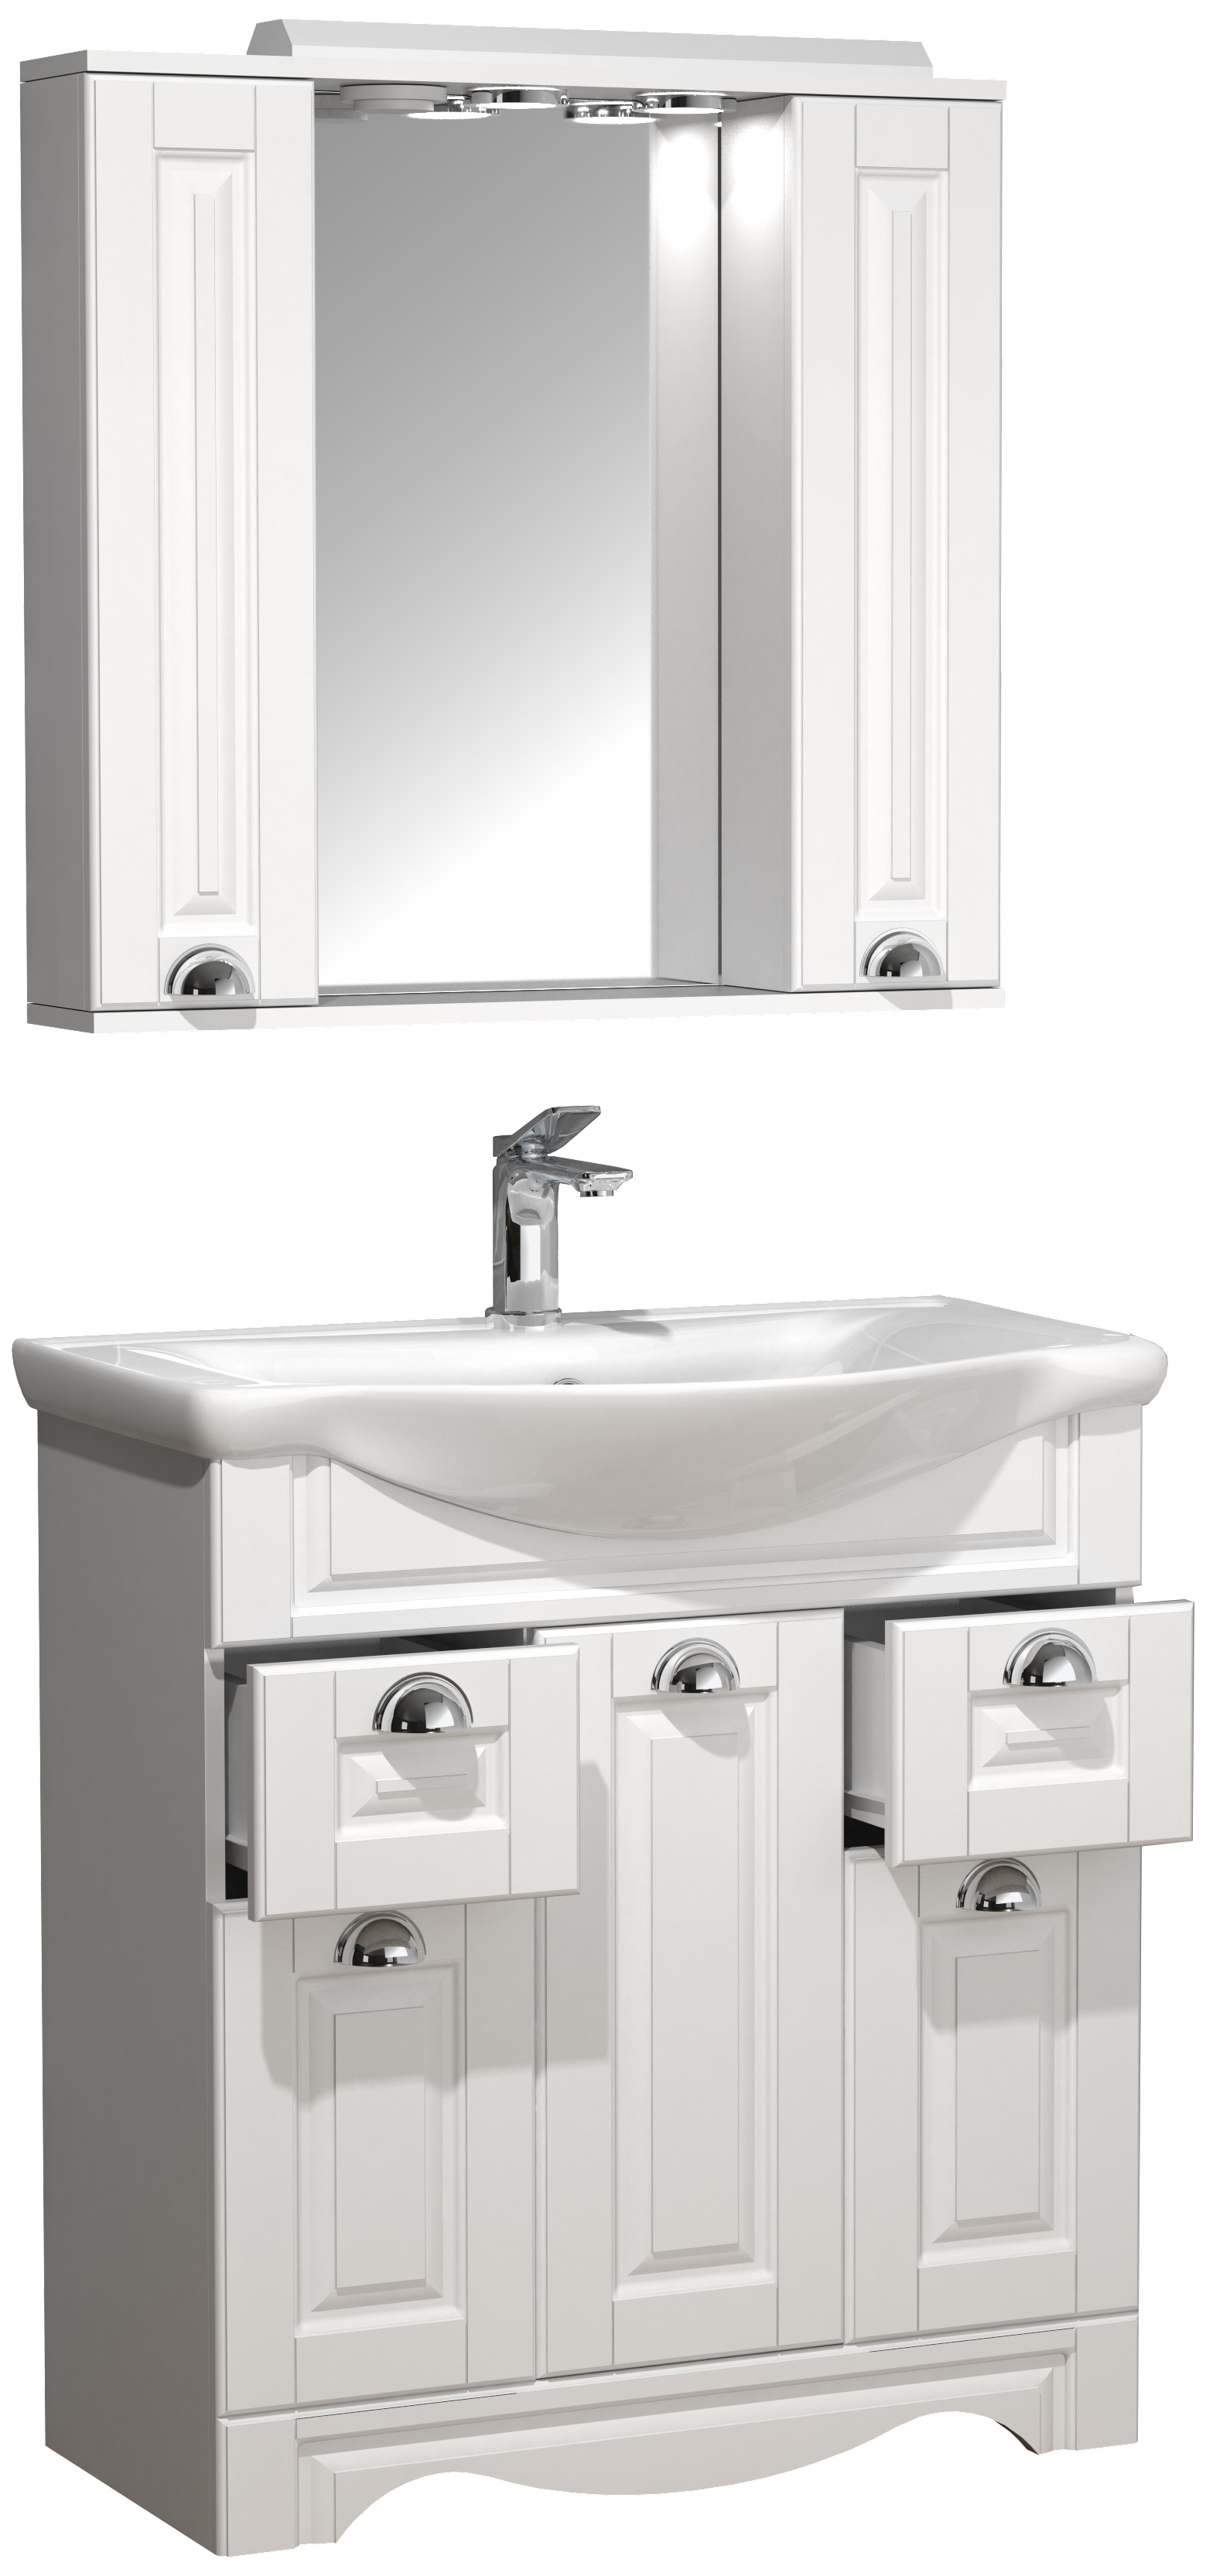 VCM NORDIC Casalo XL 3-delt vaskeplads, m. spejlskab, håndvask, 5 låger, 2 skuffer - hvid melamin